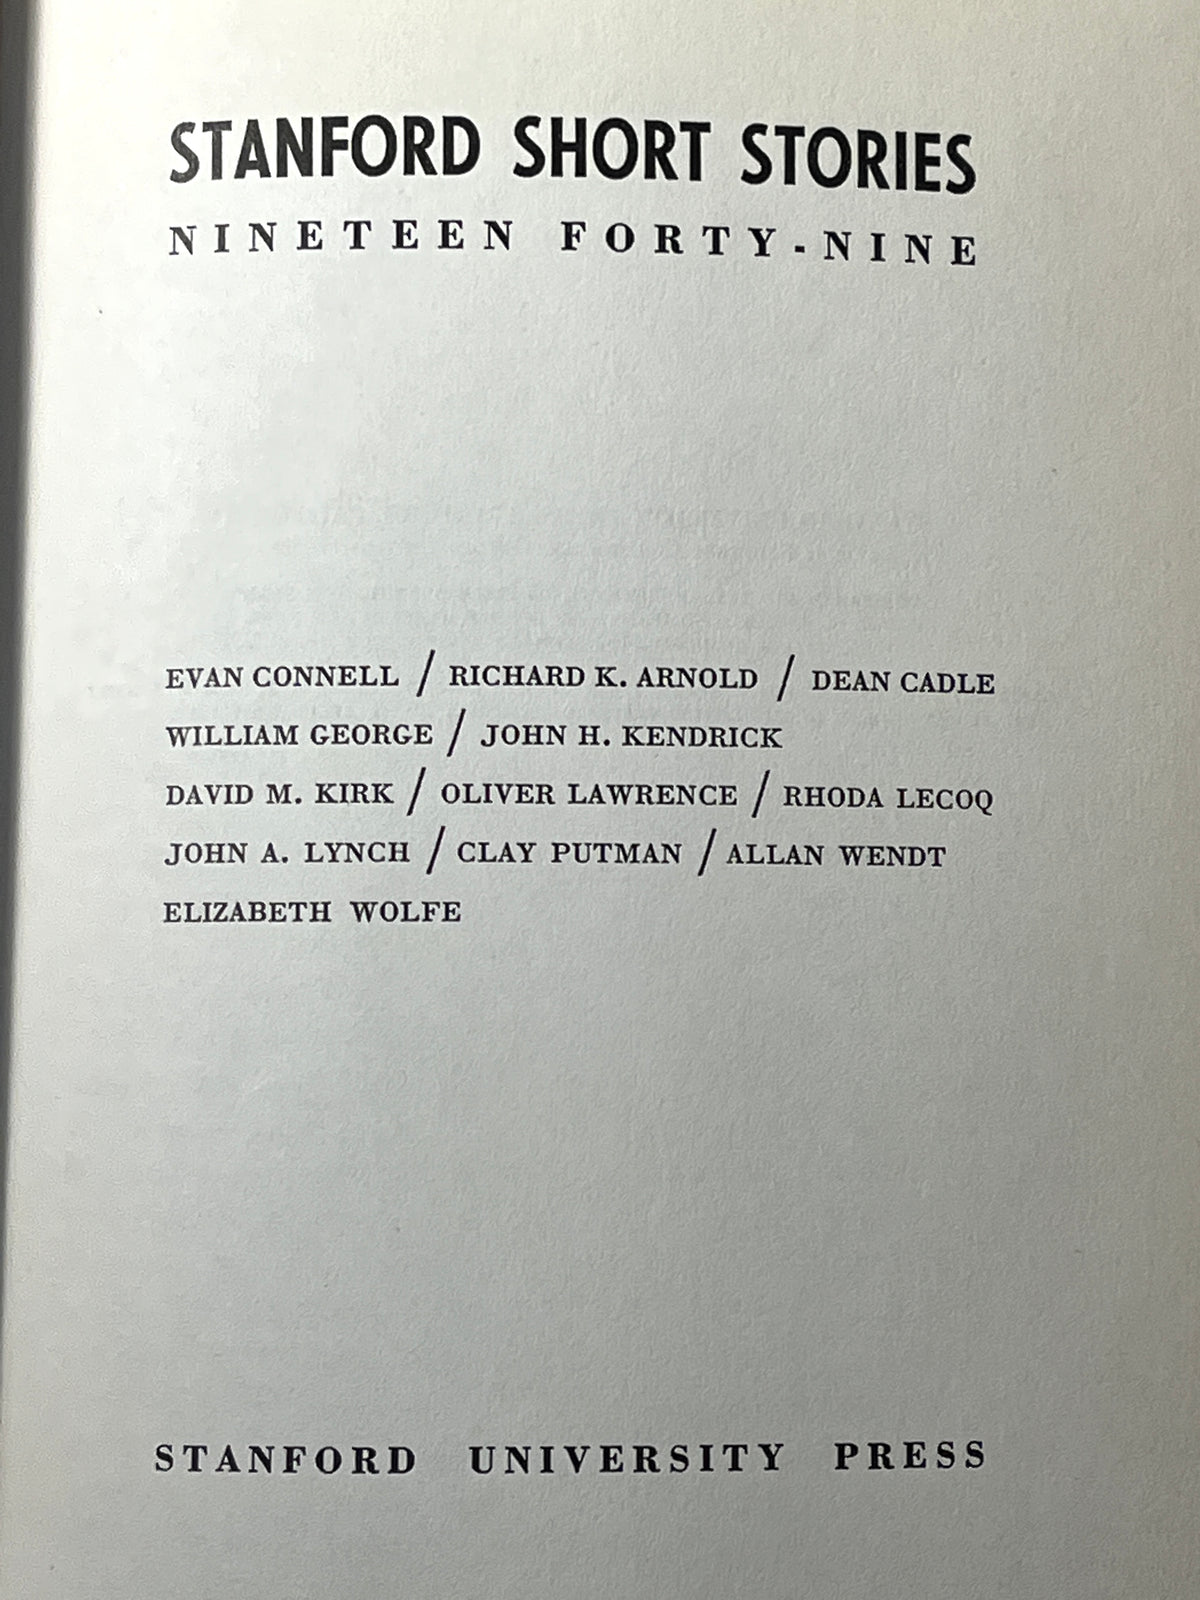 Stanford Short Stories: Nineteen Forty-nine ..., Wallace Stegner, 1949, VG w/DJ